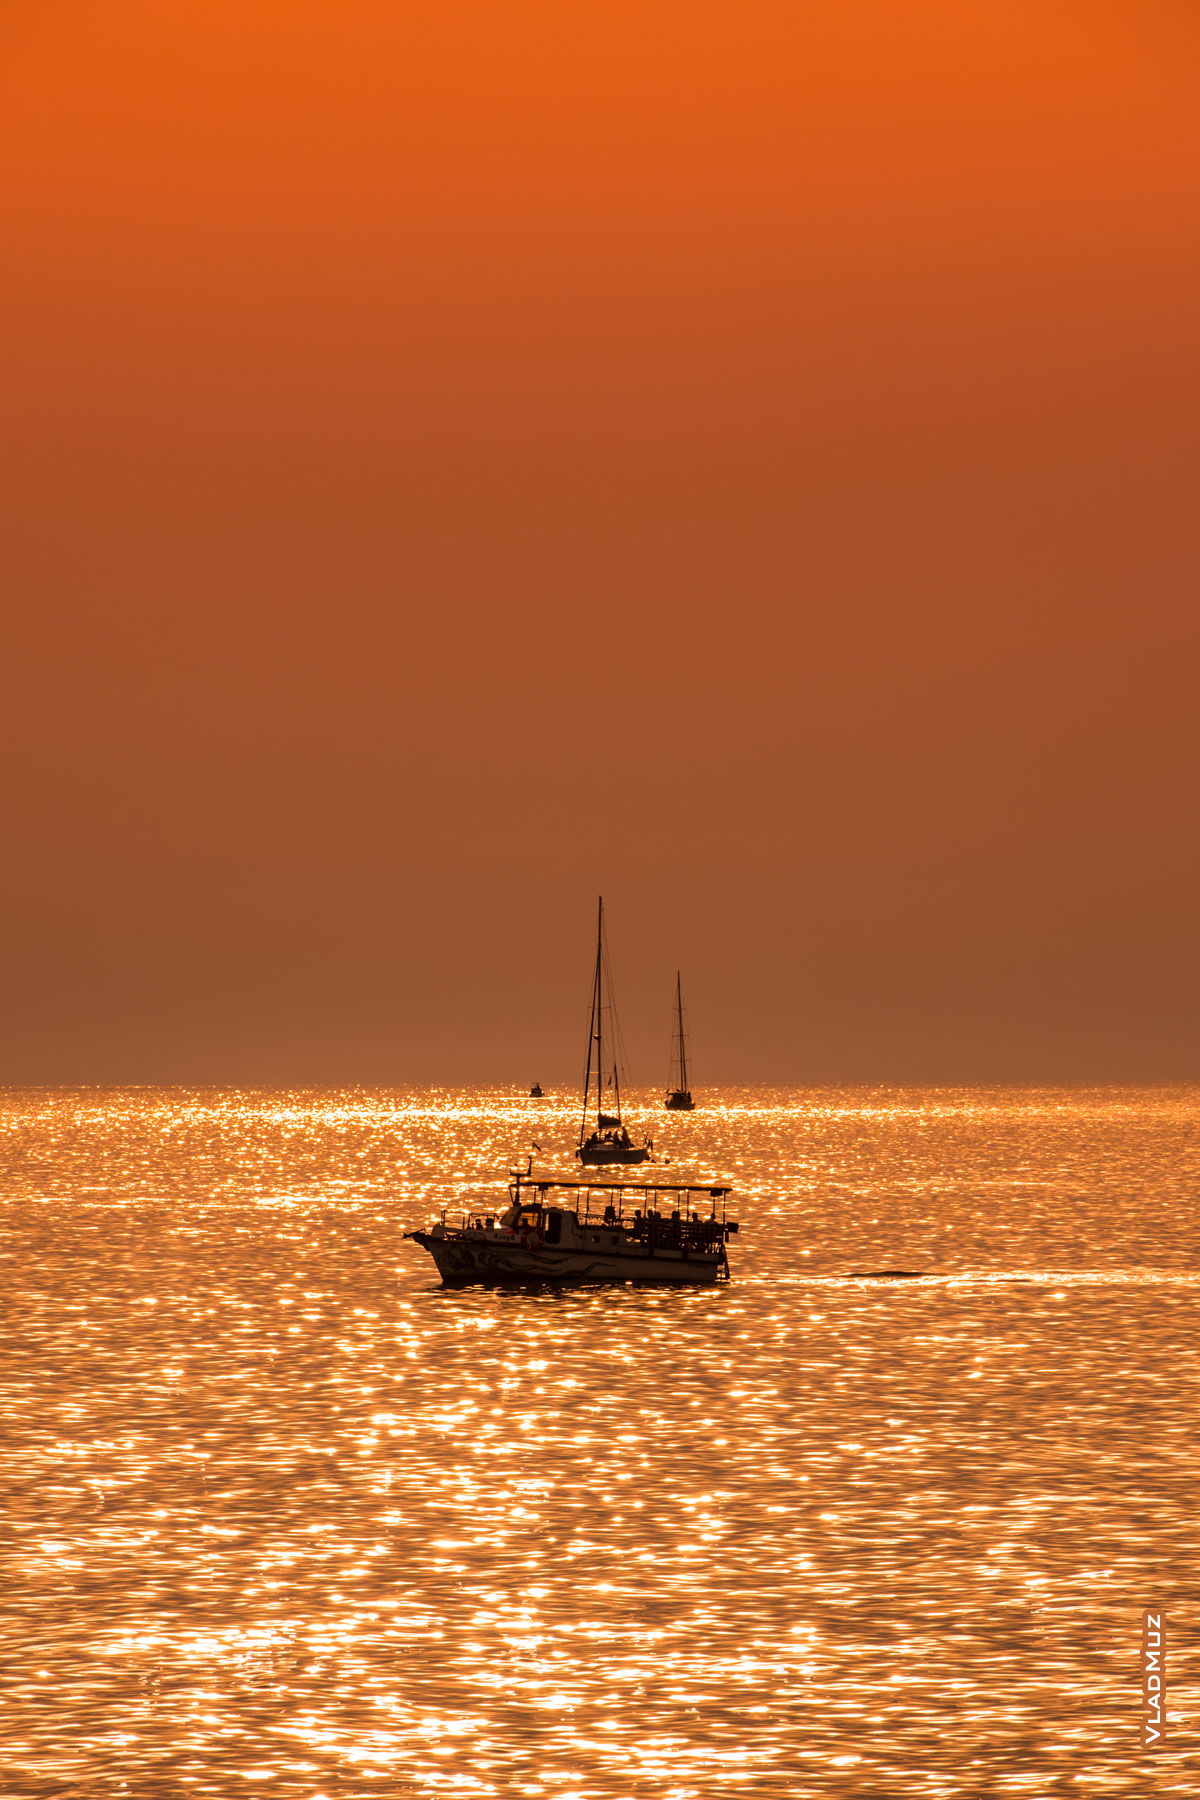 Морской фото пейзаж в Сочи с катером и яхтами